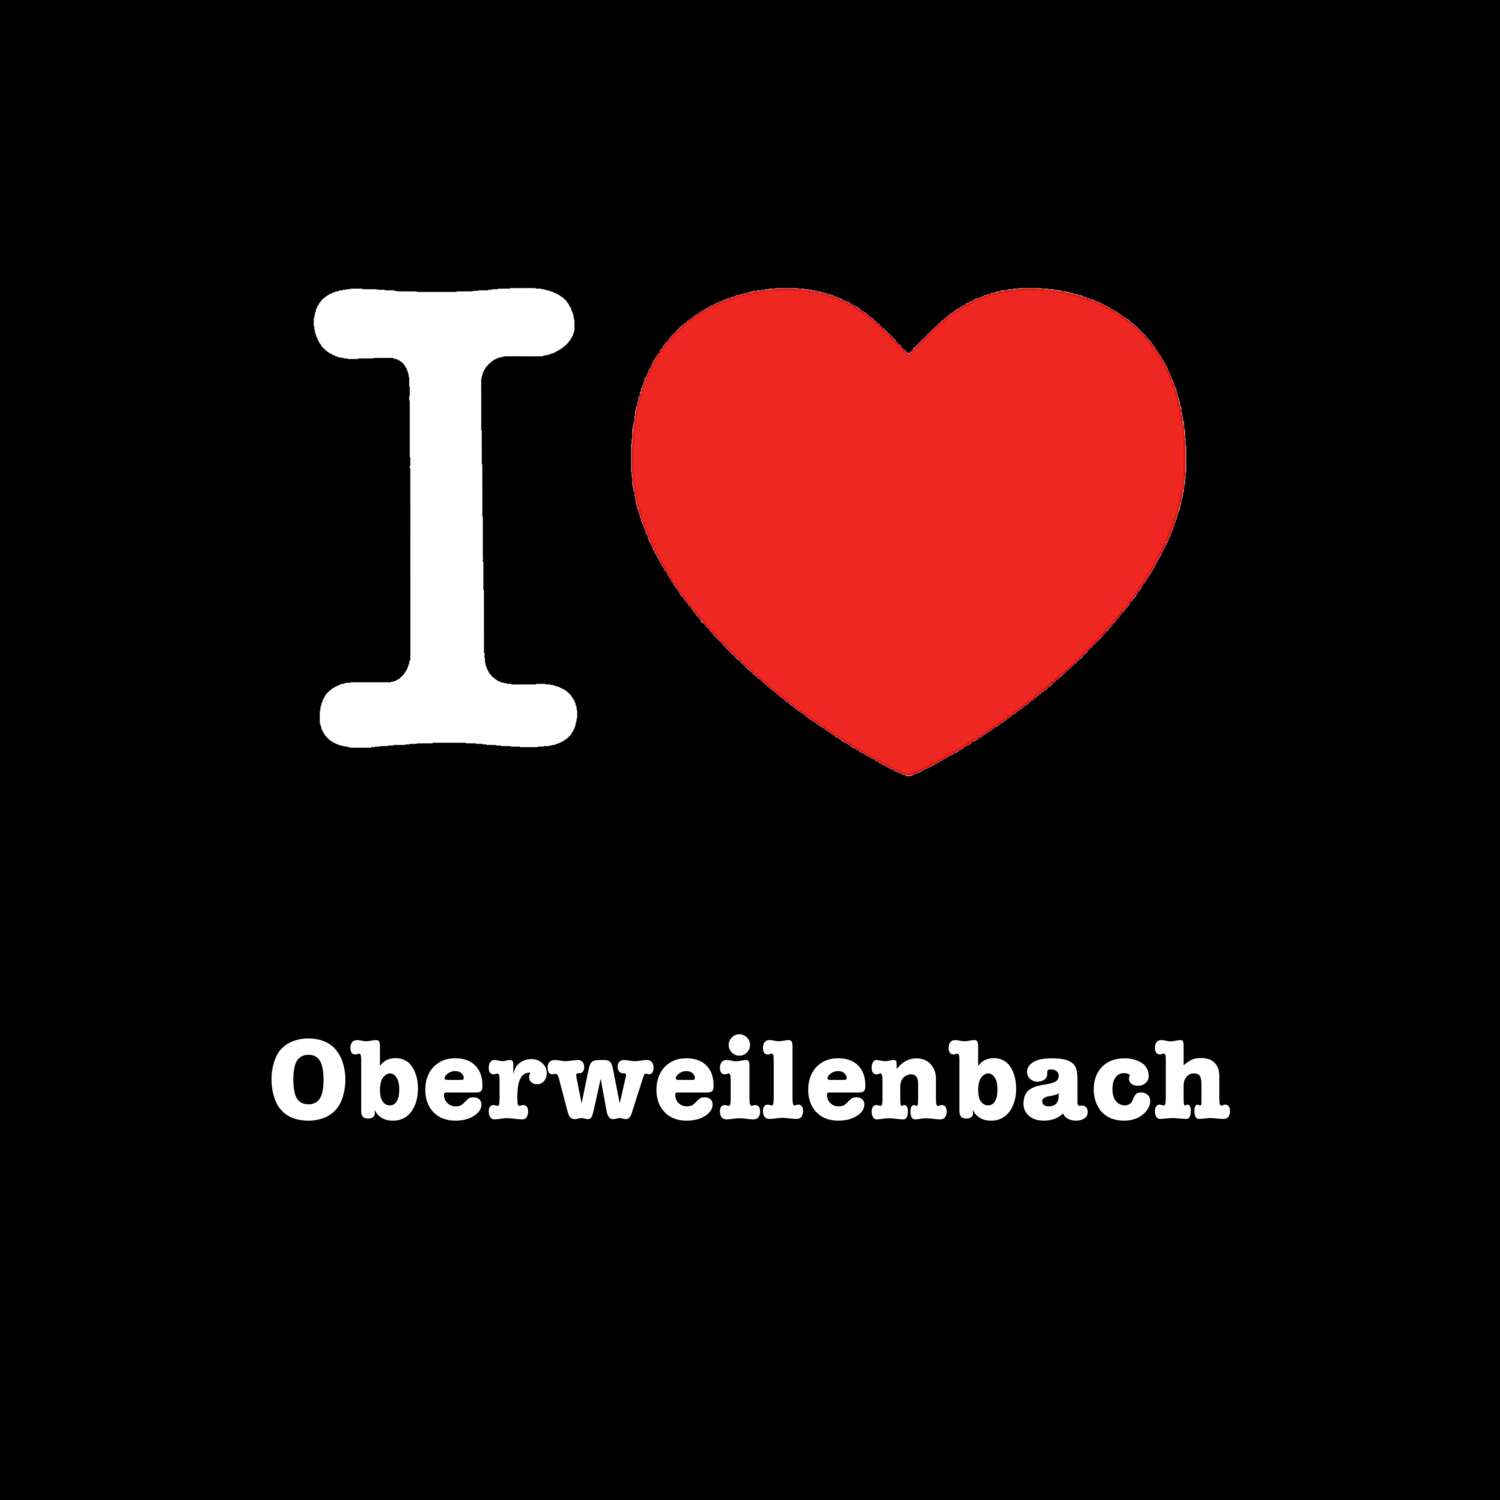 Oberweilenbach T-Shirt »I love«